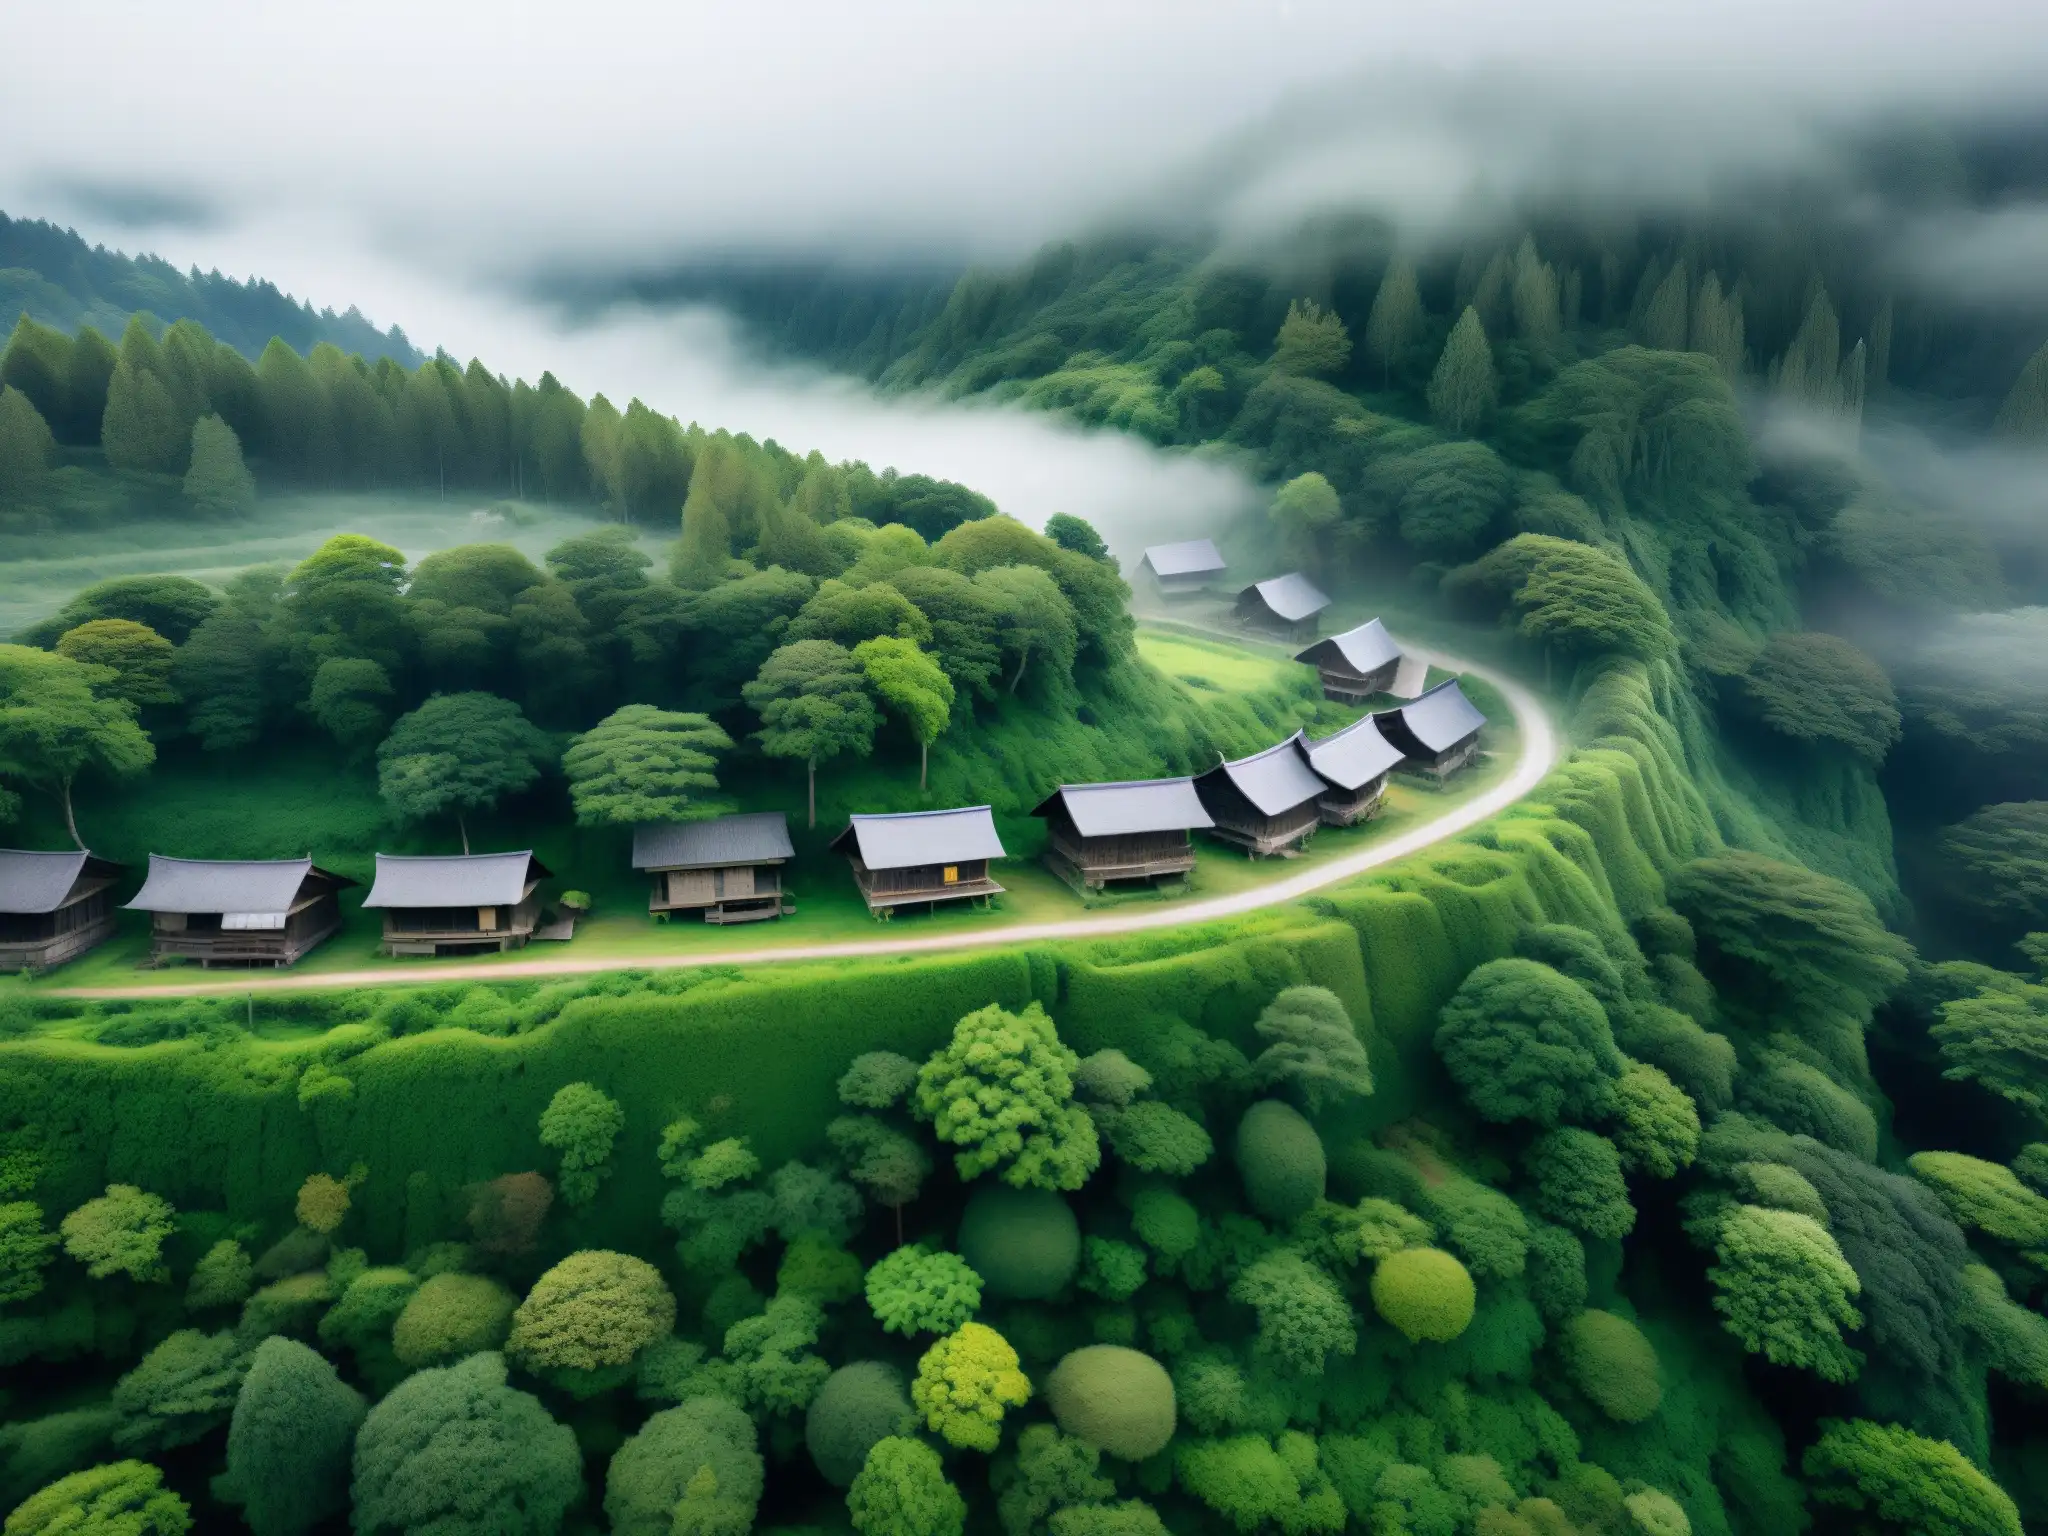 Misteriosa vista aérea de la antigua aldea de Sugisawa envuelta en niebla y rodeada de bosques